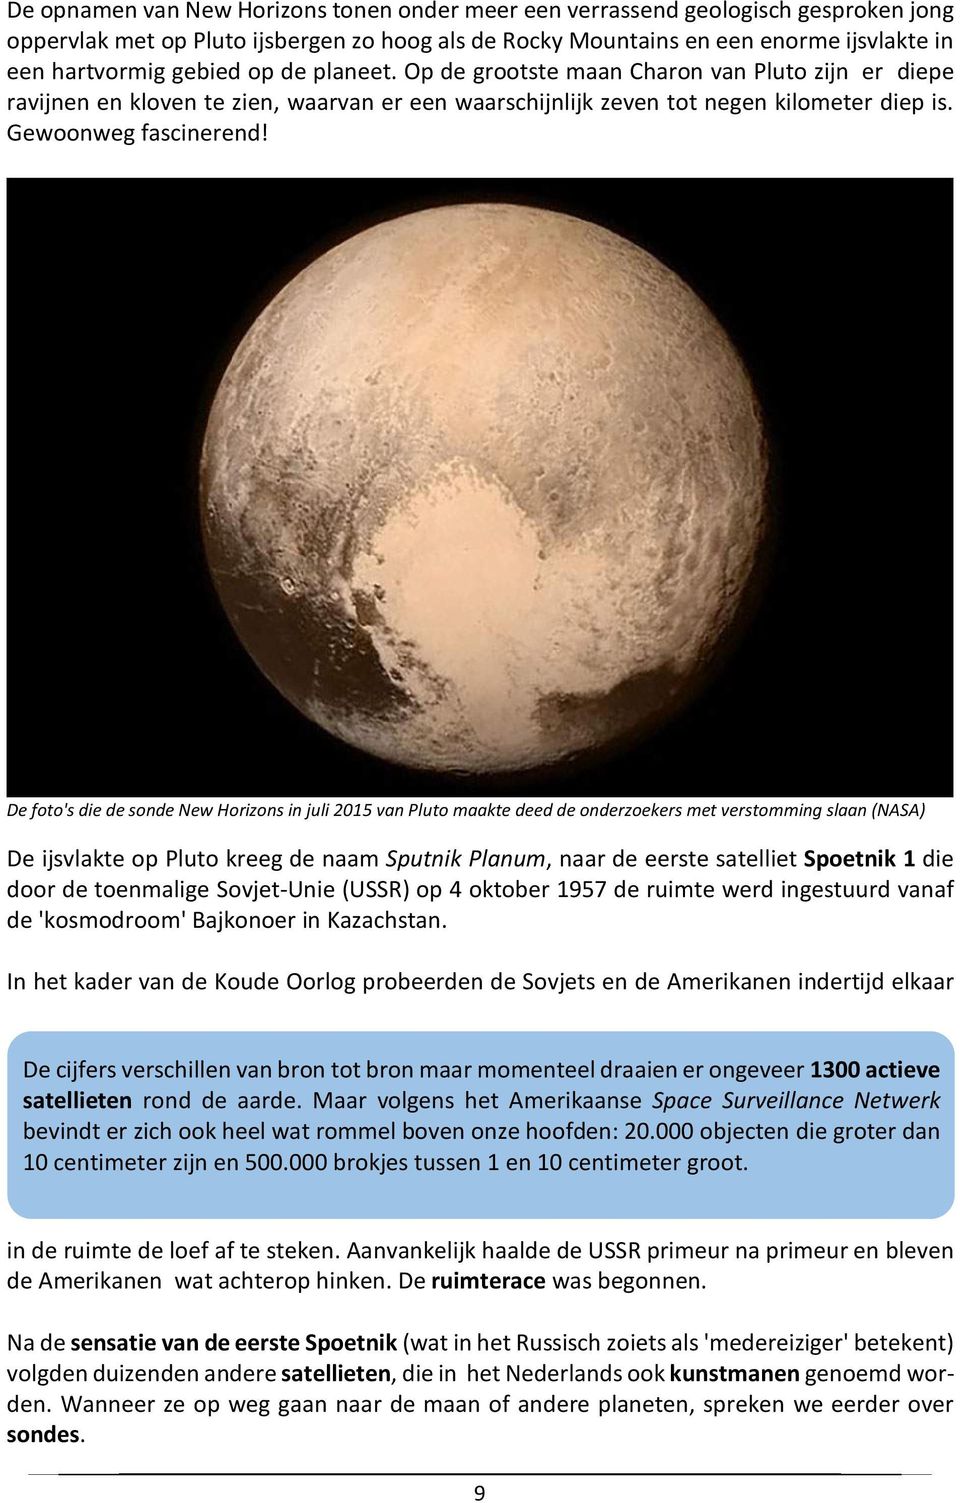 De foto's die de sonde New Horizons in juli 2015 van Pluto maakte deed de onderzoekers met verstomming slaan (NASA) De ijsvlakte op Pluto kreeg de naam Sputnik Planum, naar de eerste satelliet